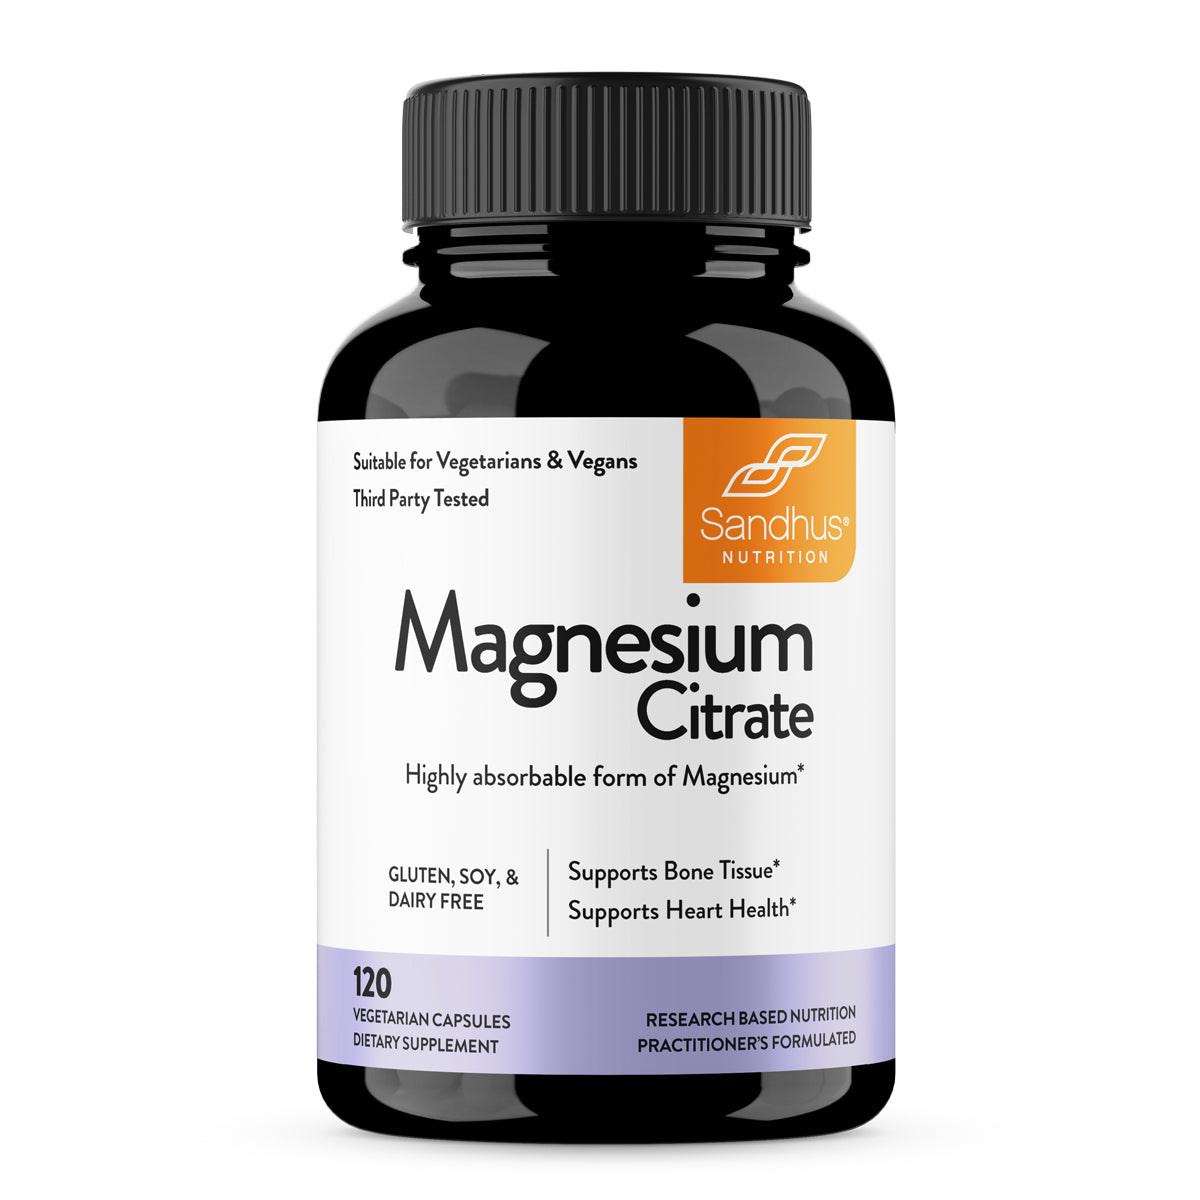 Citrate de magnésium 60 gélules – NowVitamins